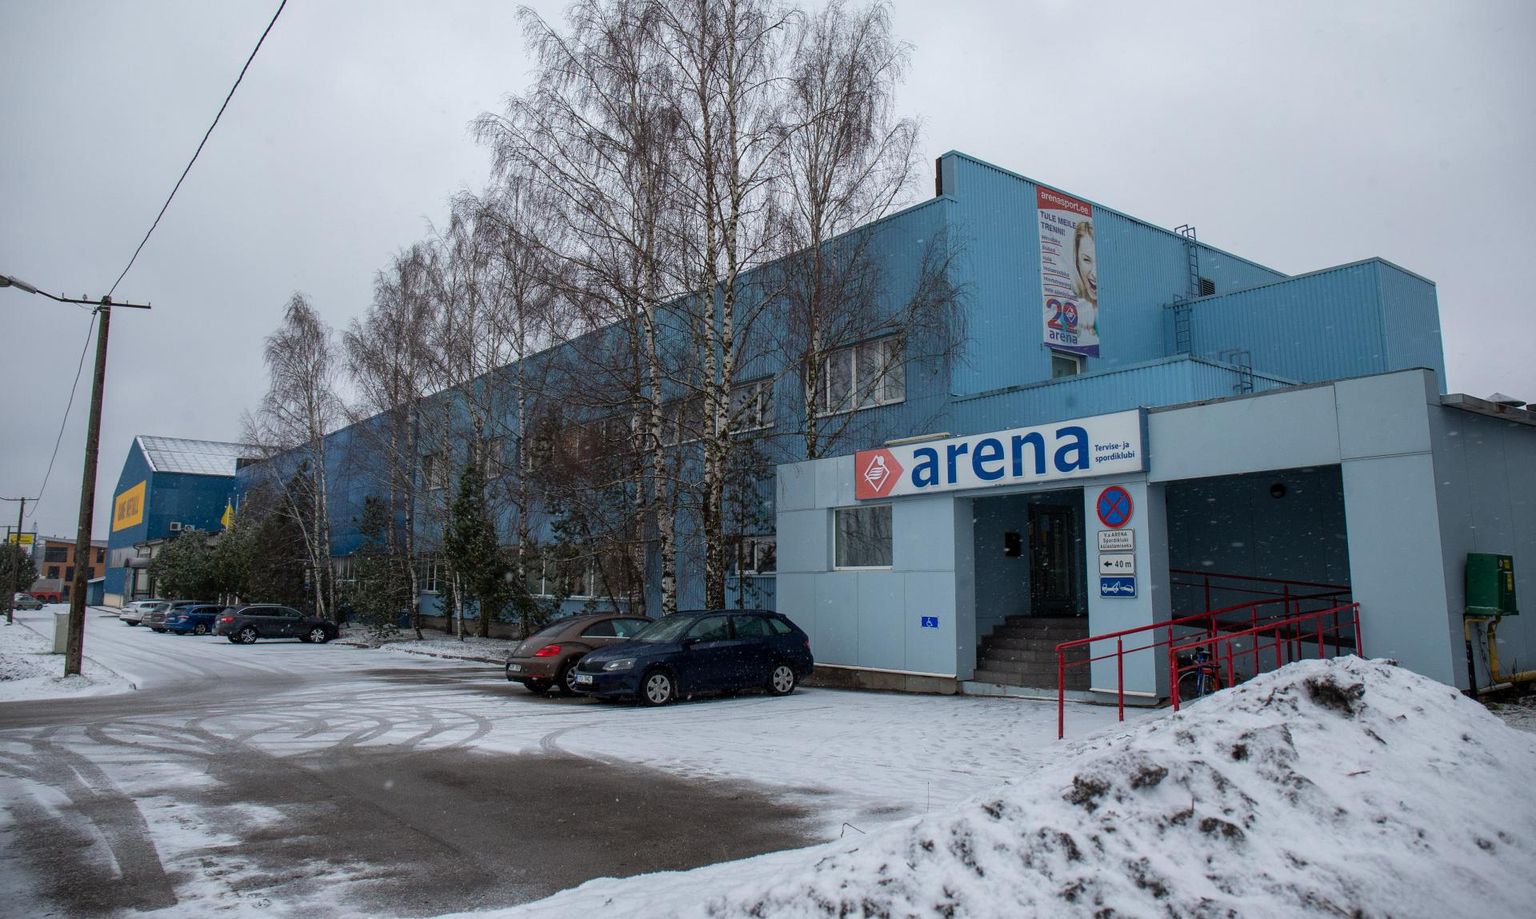 Arena tervise- ja spordiklubi on müügis pisut enam kui 1,5 miljoni euro eest.